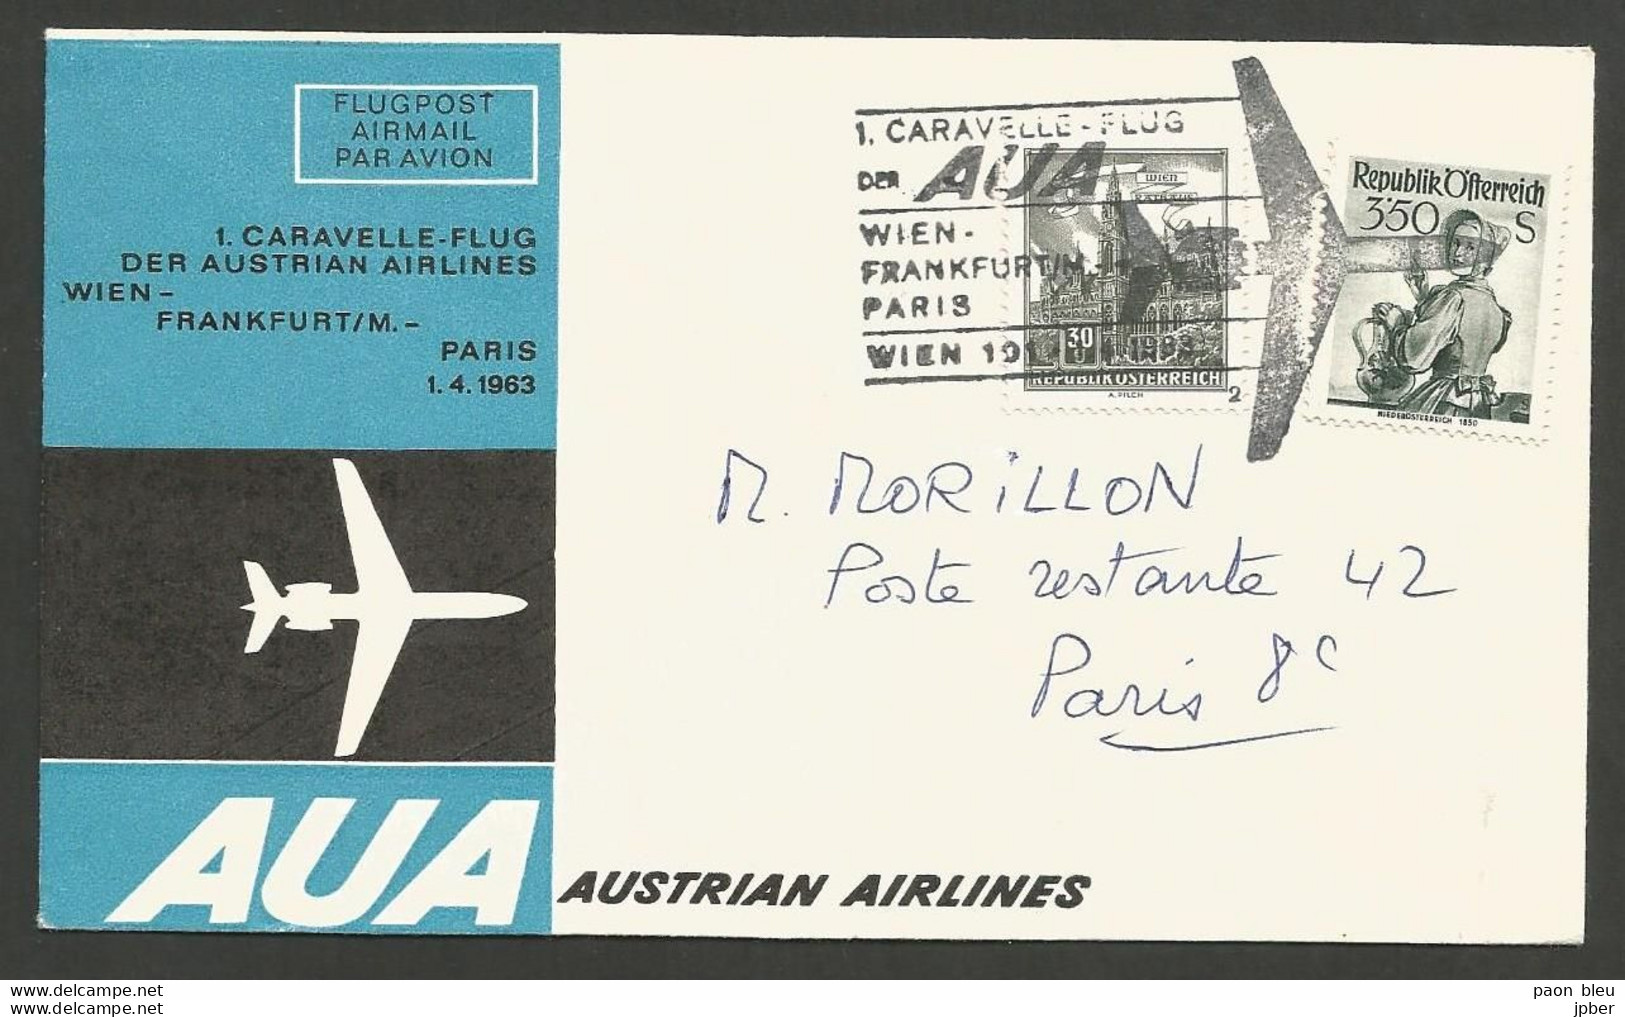 Aérophilatélie - Autriche - AUA Austrian Airlines - Wien-Frankfurt-Paris 1-4-63 - Wien Rathaus - Niederösterreich 1950 - Premiers Vols